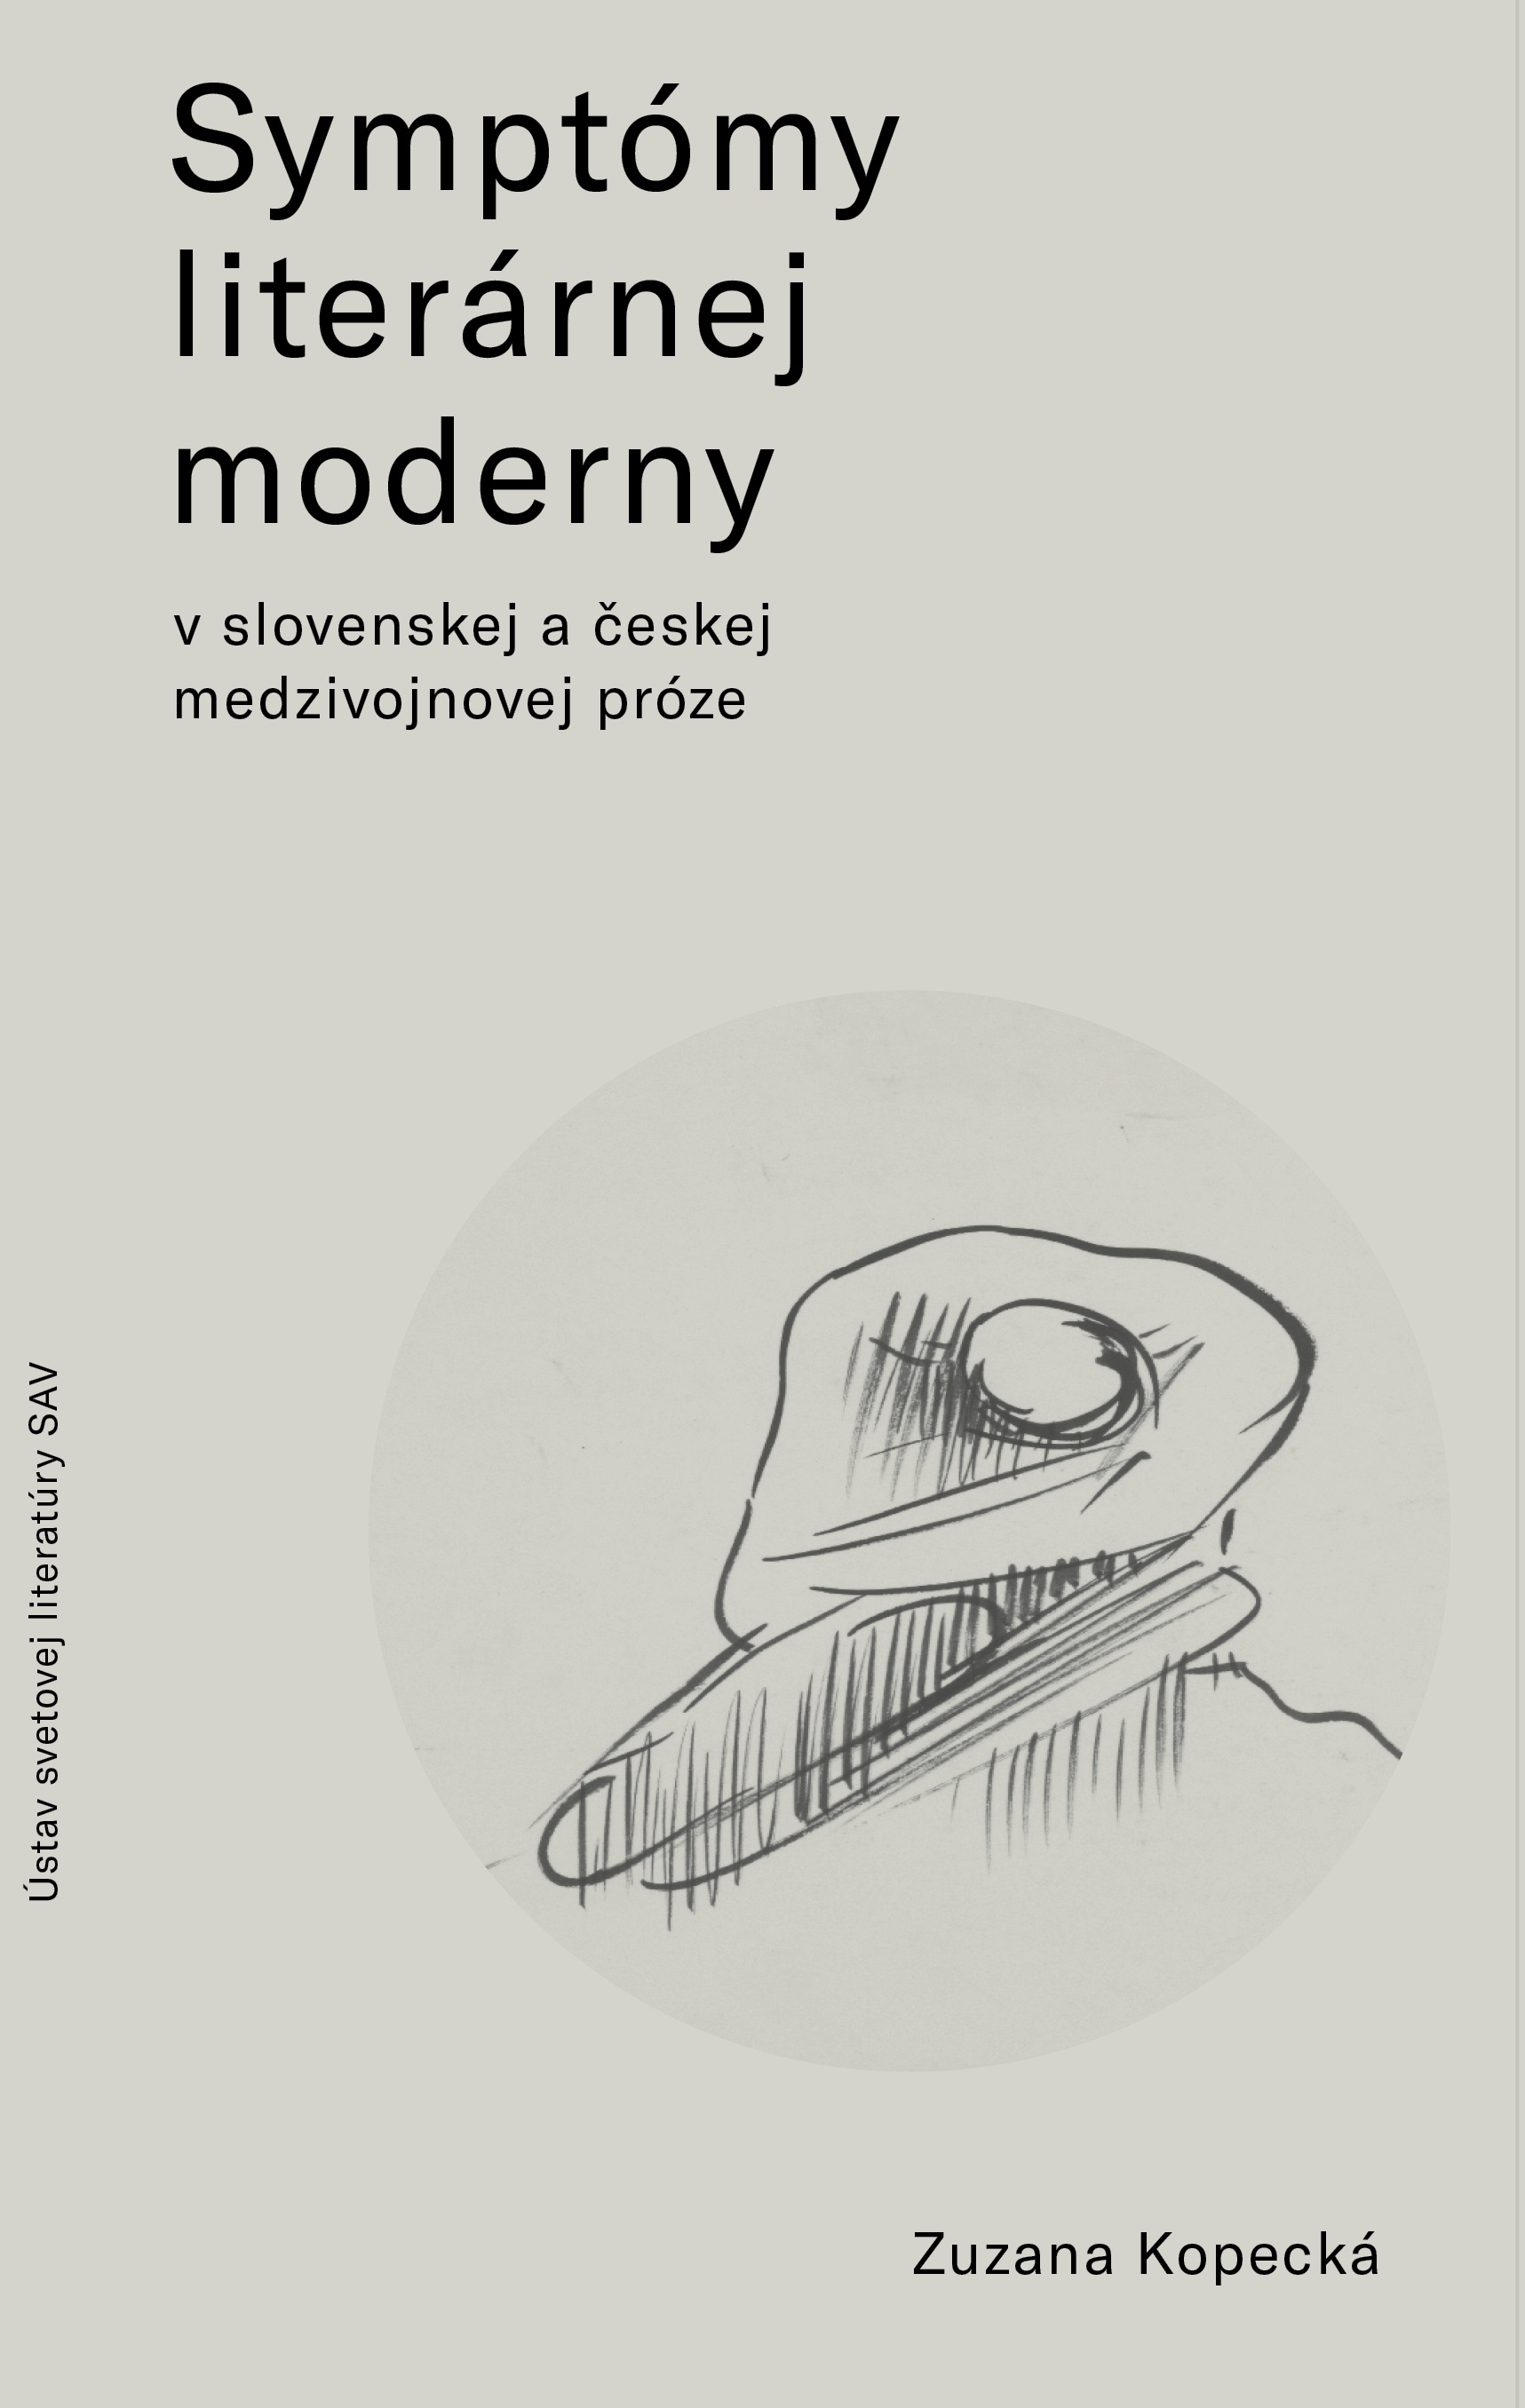 Symptómy literárnej moderny v slovenskej a českej medzivojnovej próze